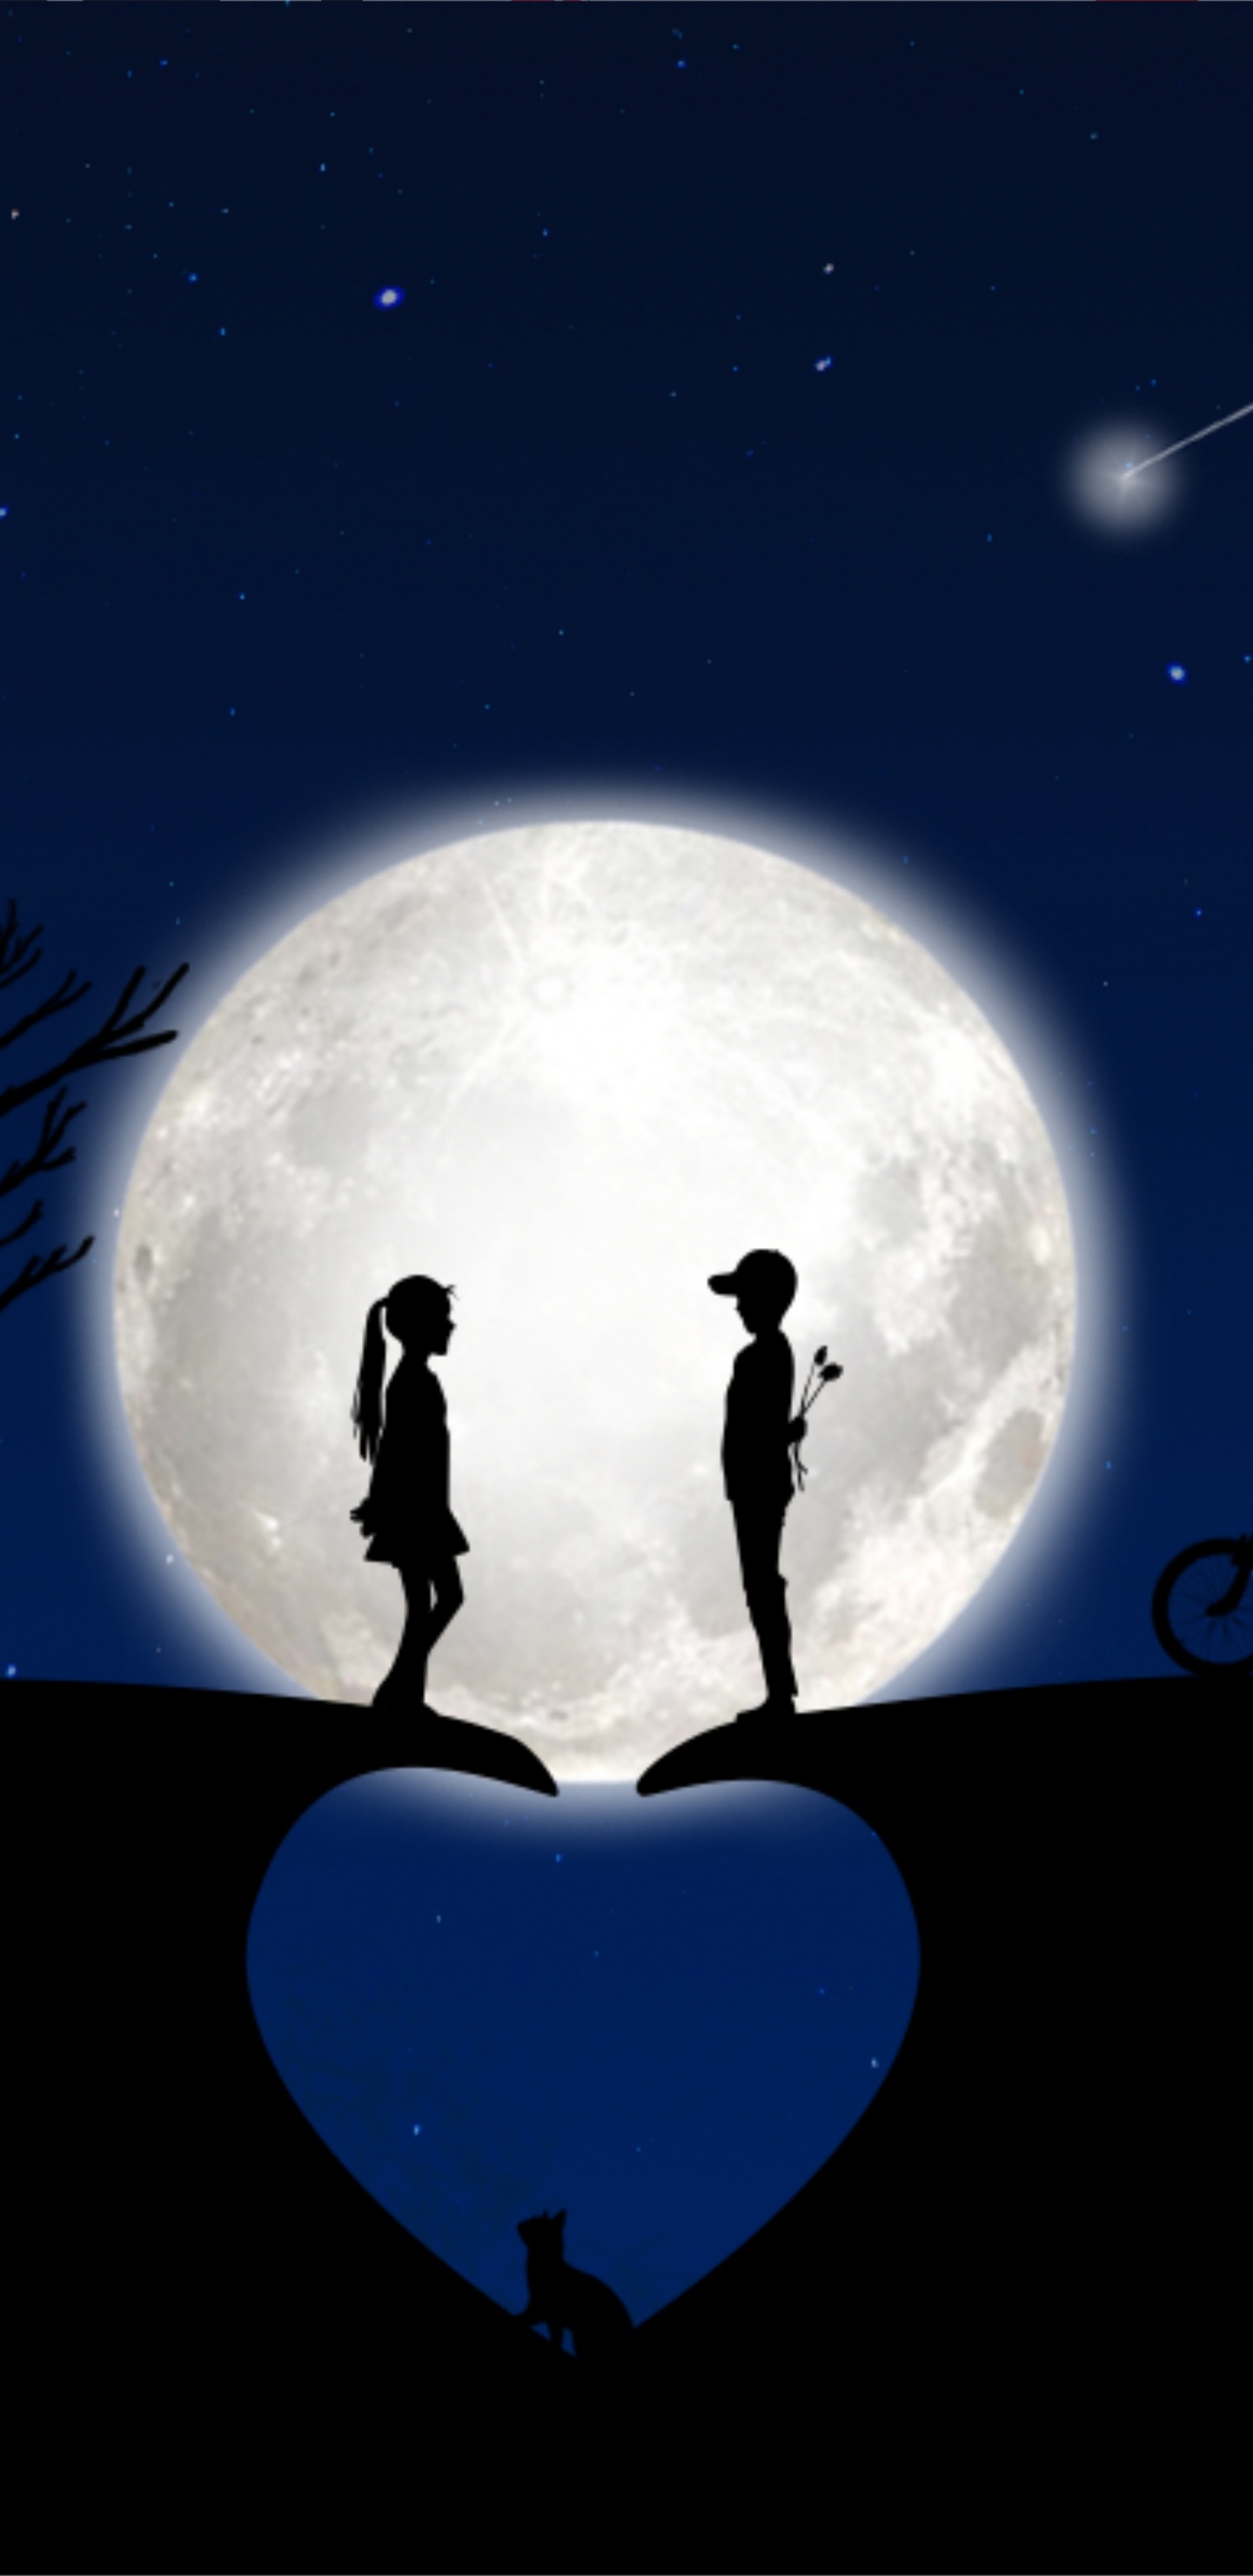 Mond, Licht, Mondlicht, Atmosphäre, Nacht. Wallpaper in 1440x2960 Resolution